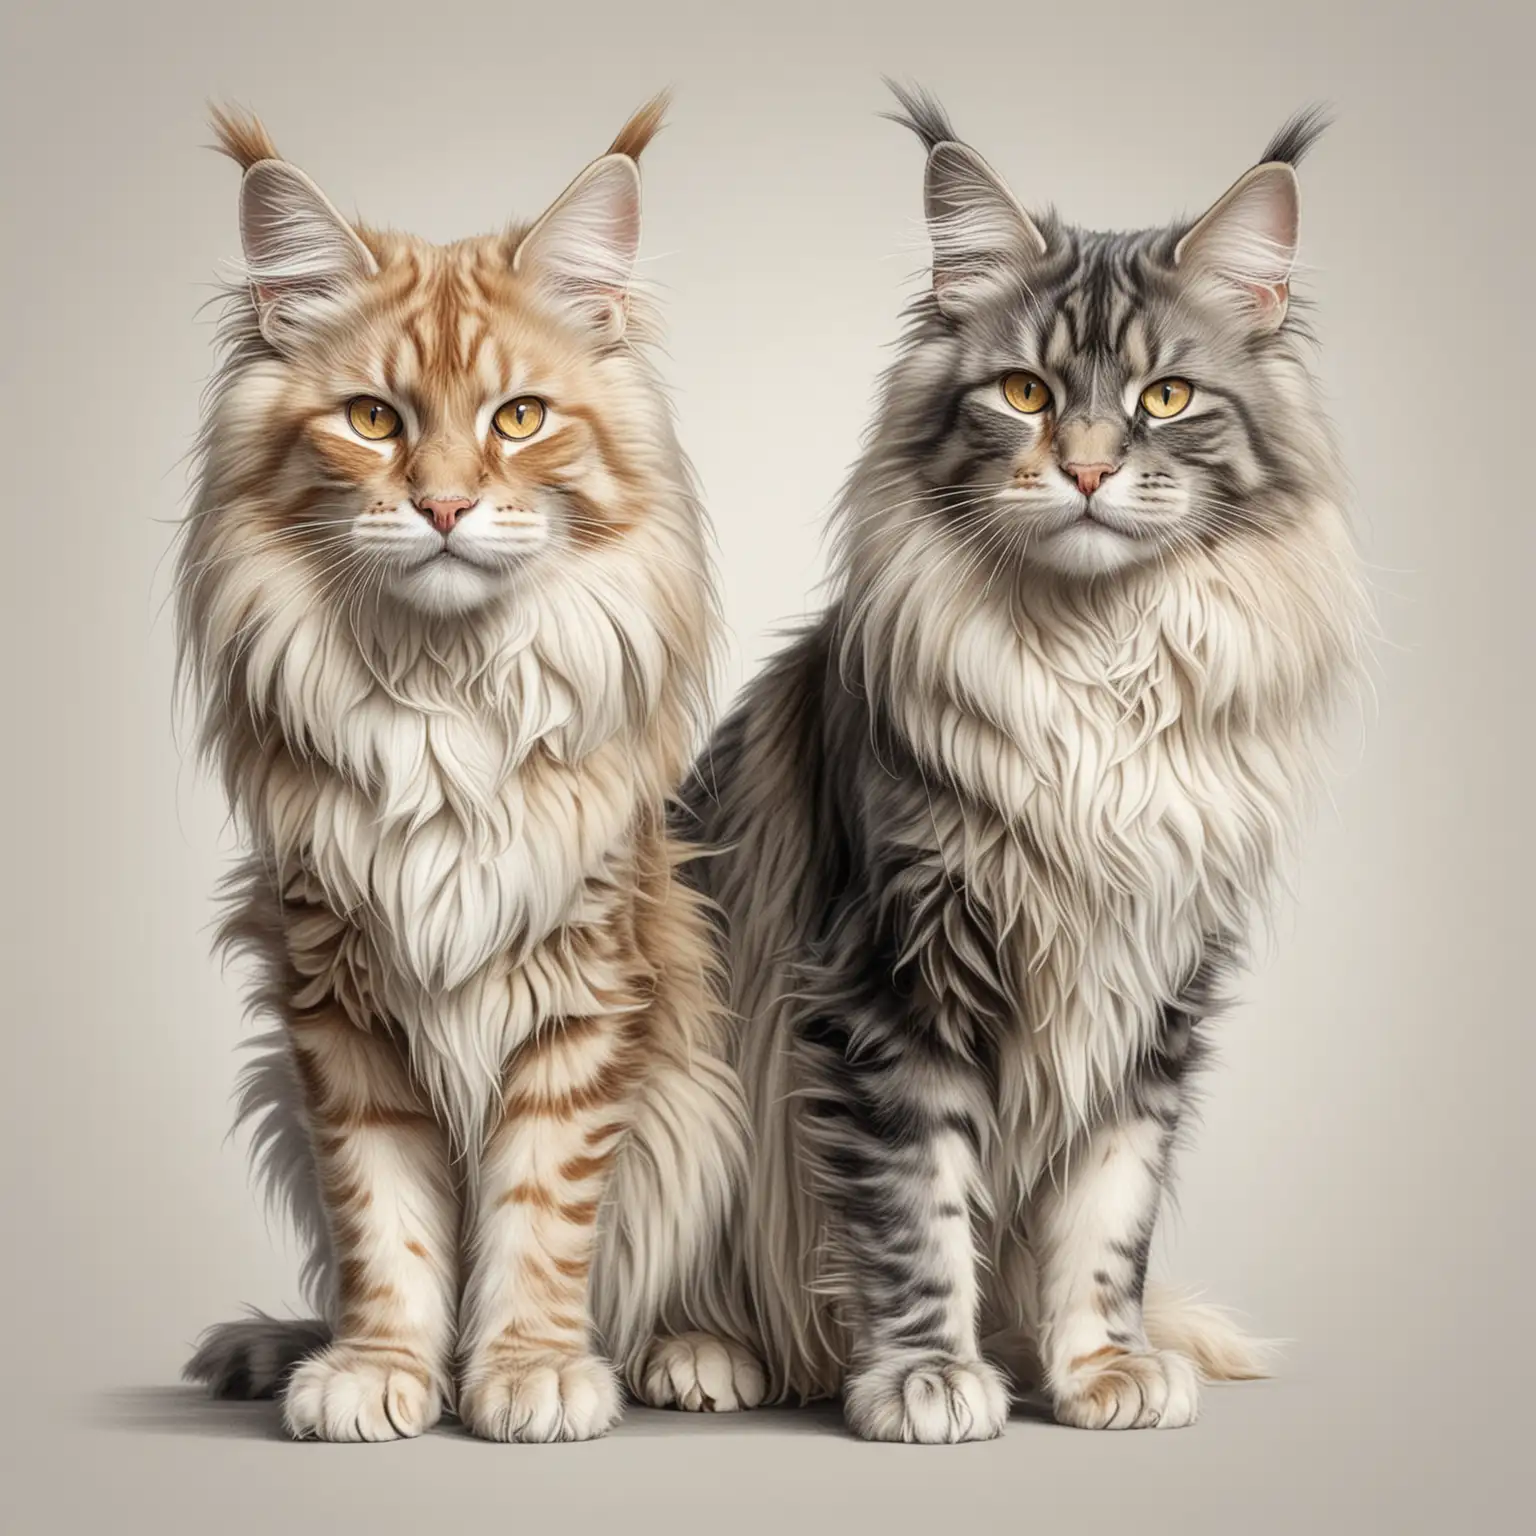 реалистичный  рисунок в стиле карандашной графики на белом фоне детализированные два больших кота один светлого другой темного окраса породы мейн-кун гладкошерстных играют
